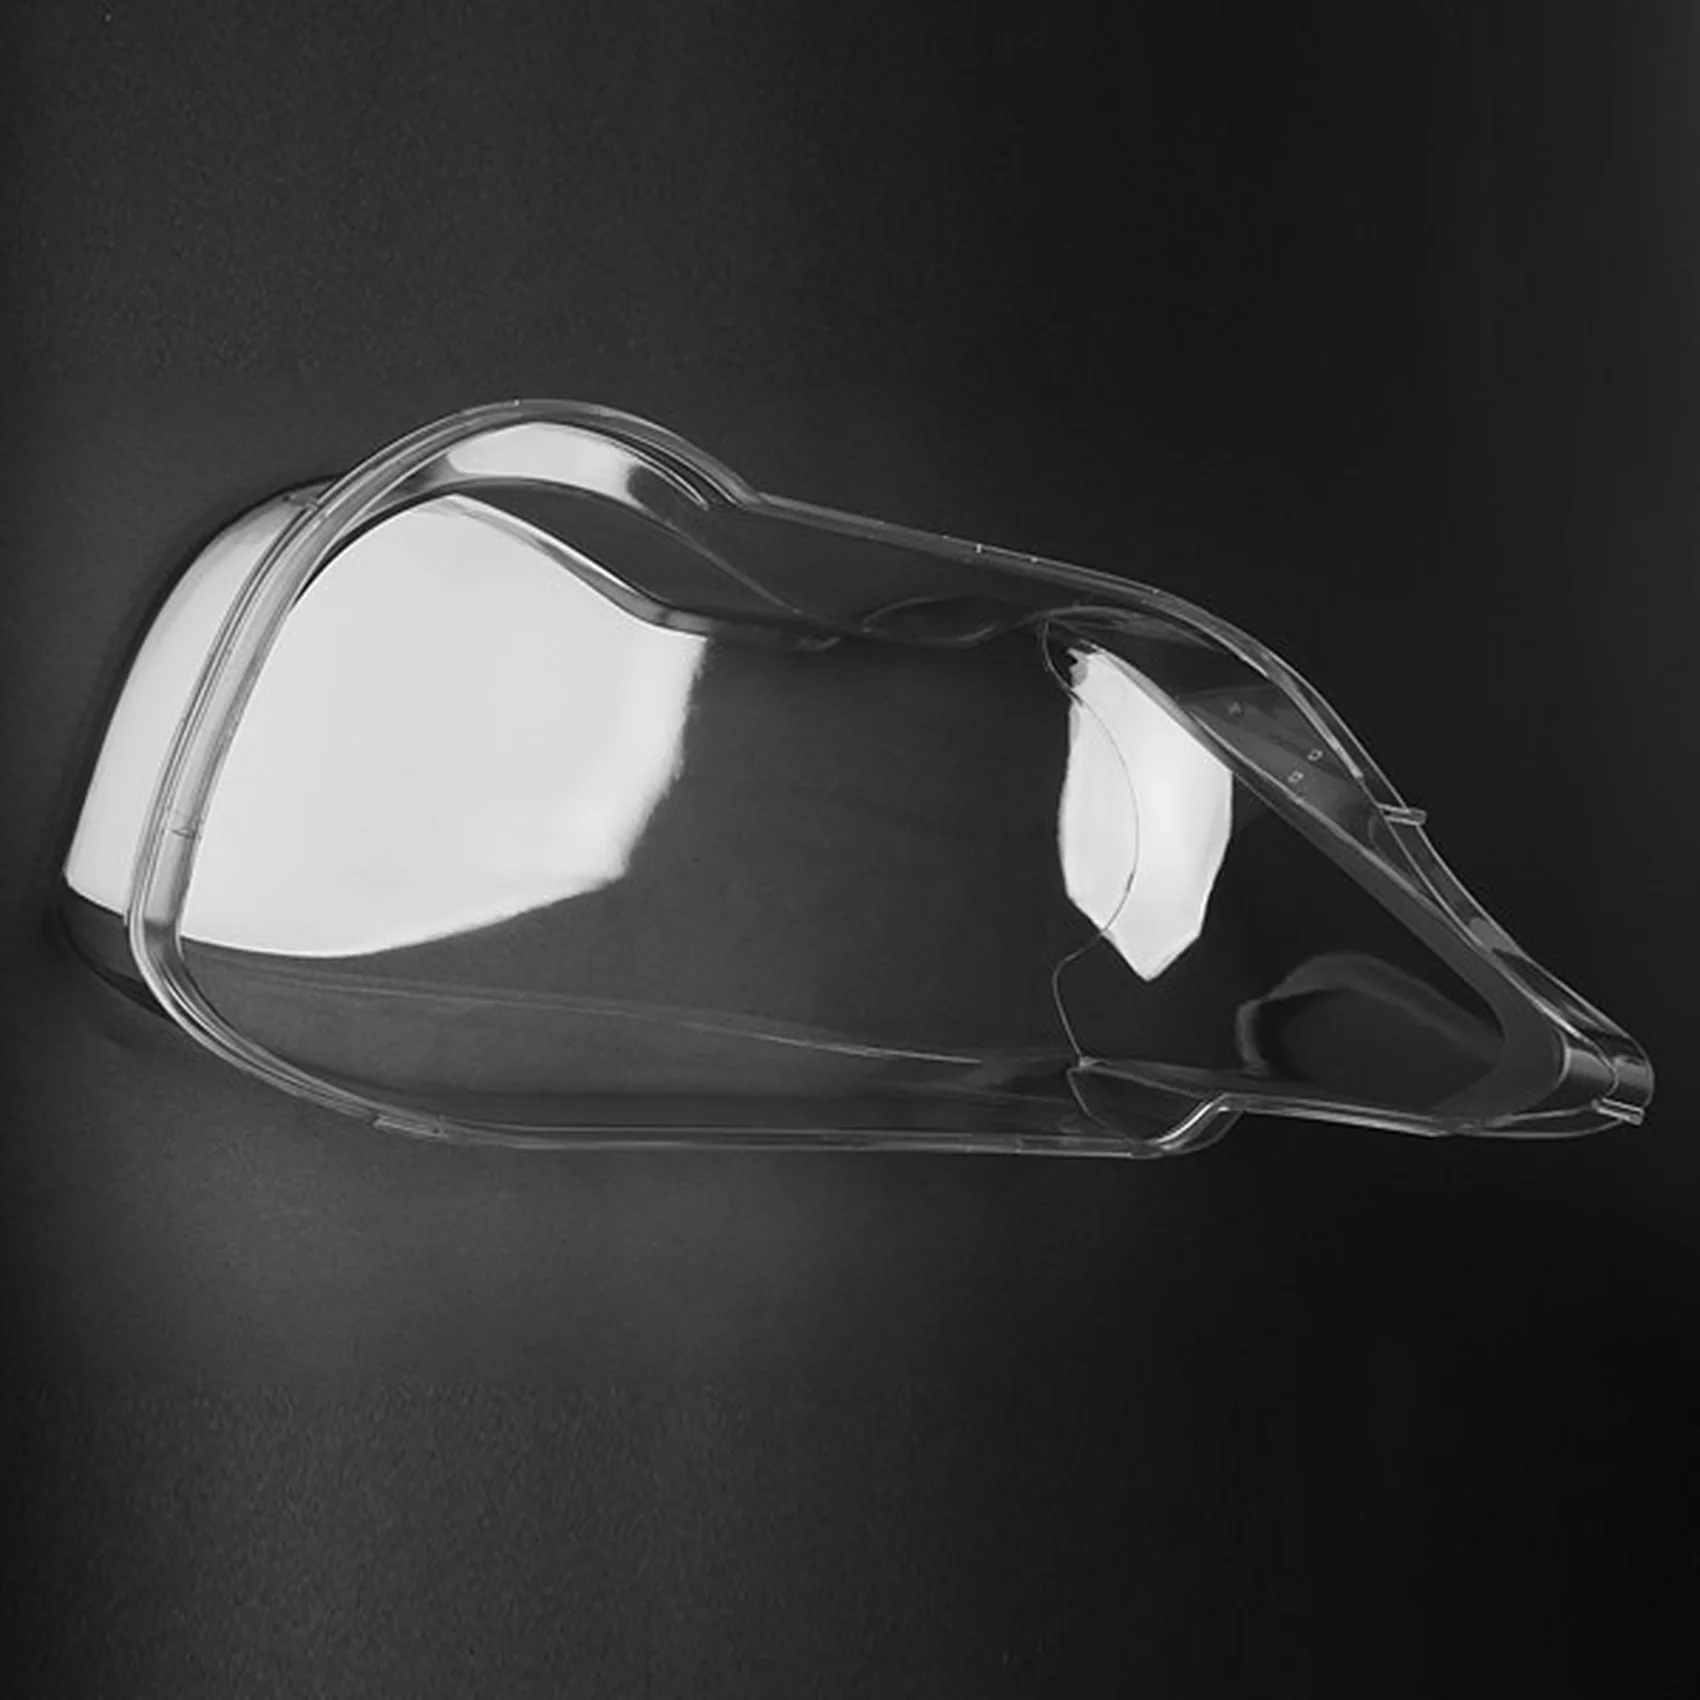 

LH Left Side Car Headlight Lens Cover Headlamp Shade Shell Glass Cover for -BMW E67 E66 E65 7 Series 2001-2004